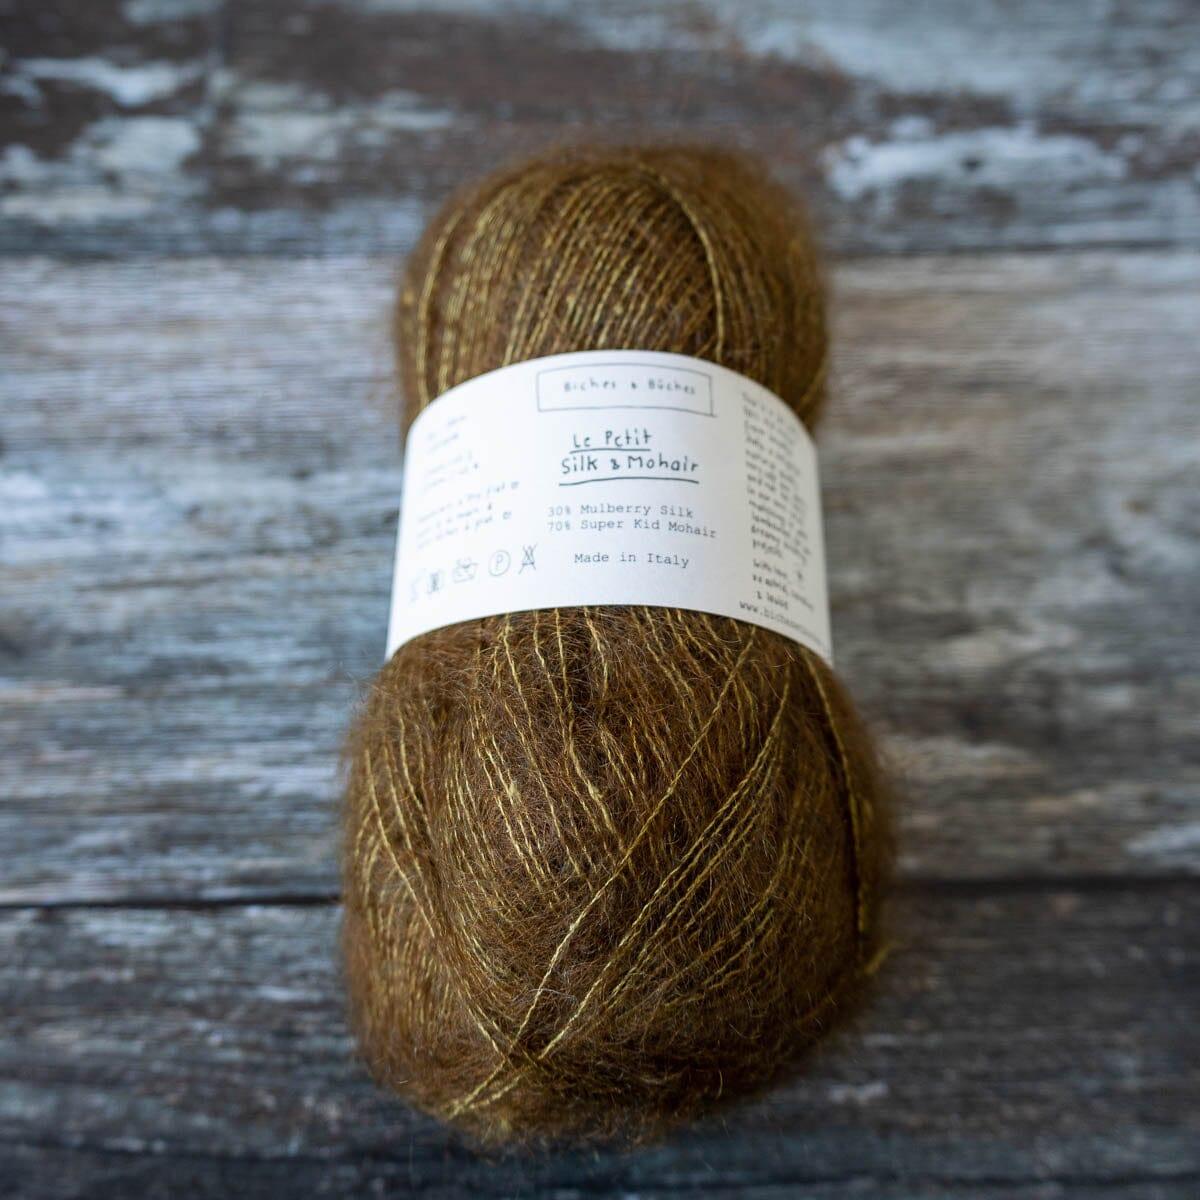 Biches & Bûches Biches & Bûches Le Petit Silk & Mohair - Dark Gold - Lace Knitting Yarn